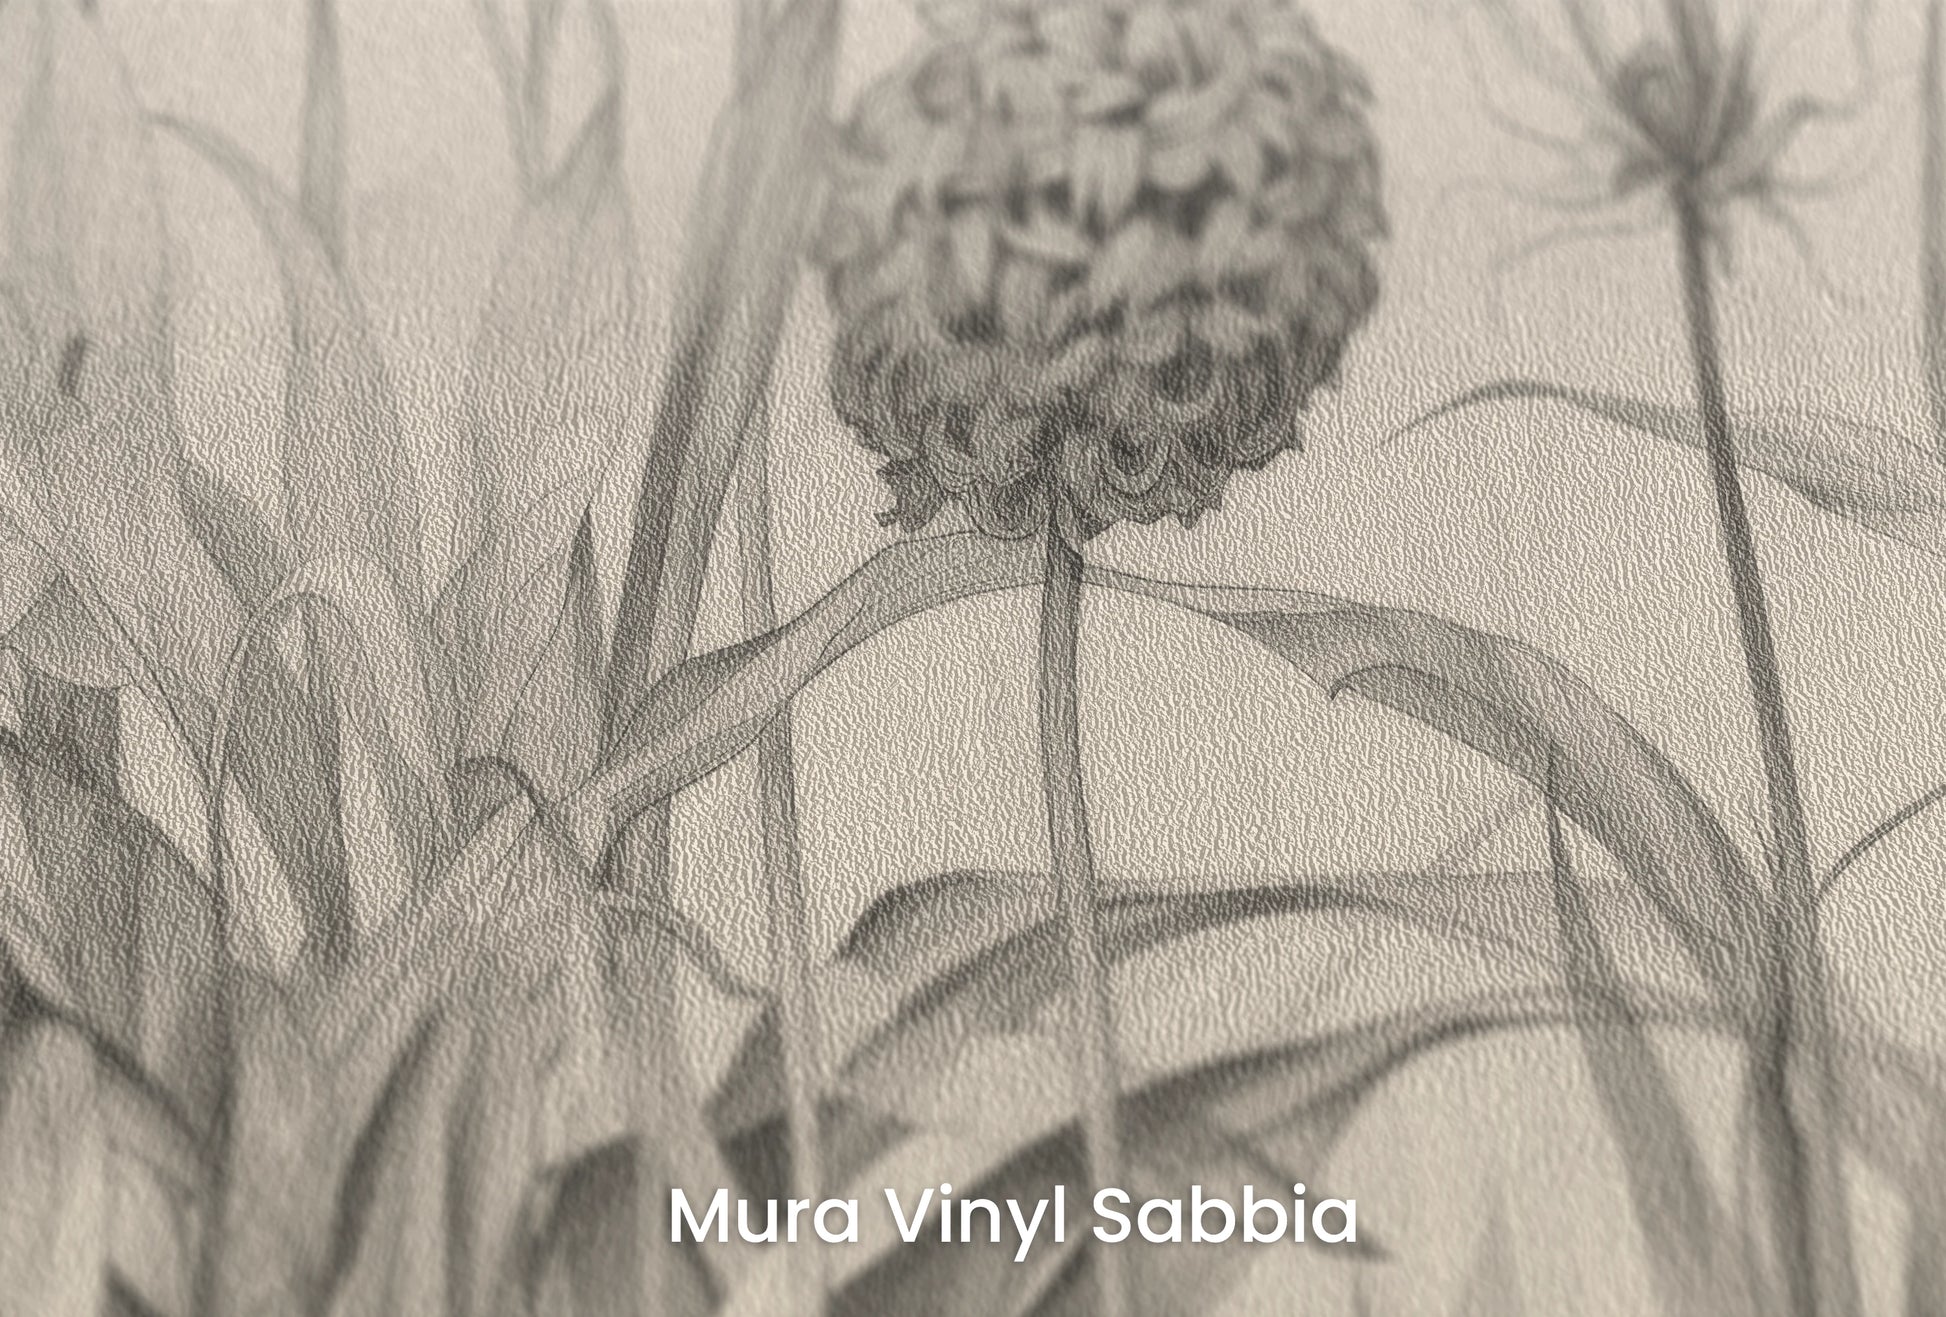 Zbliżenie na artystyczną fototapetę o nazwie Garden Sketches na podłożu Mura Vinyl Sabbia struktura grubego ziarna piasku.